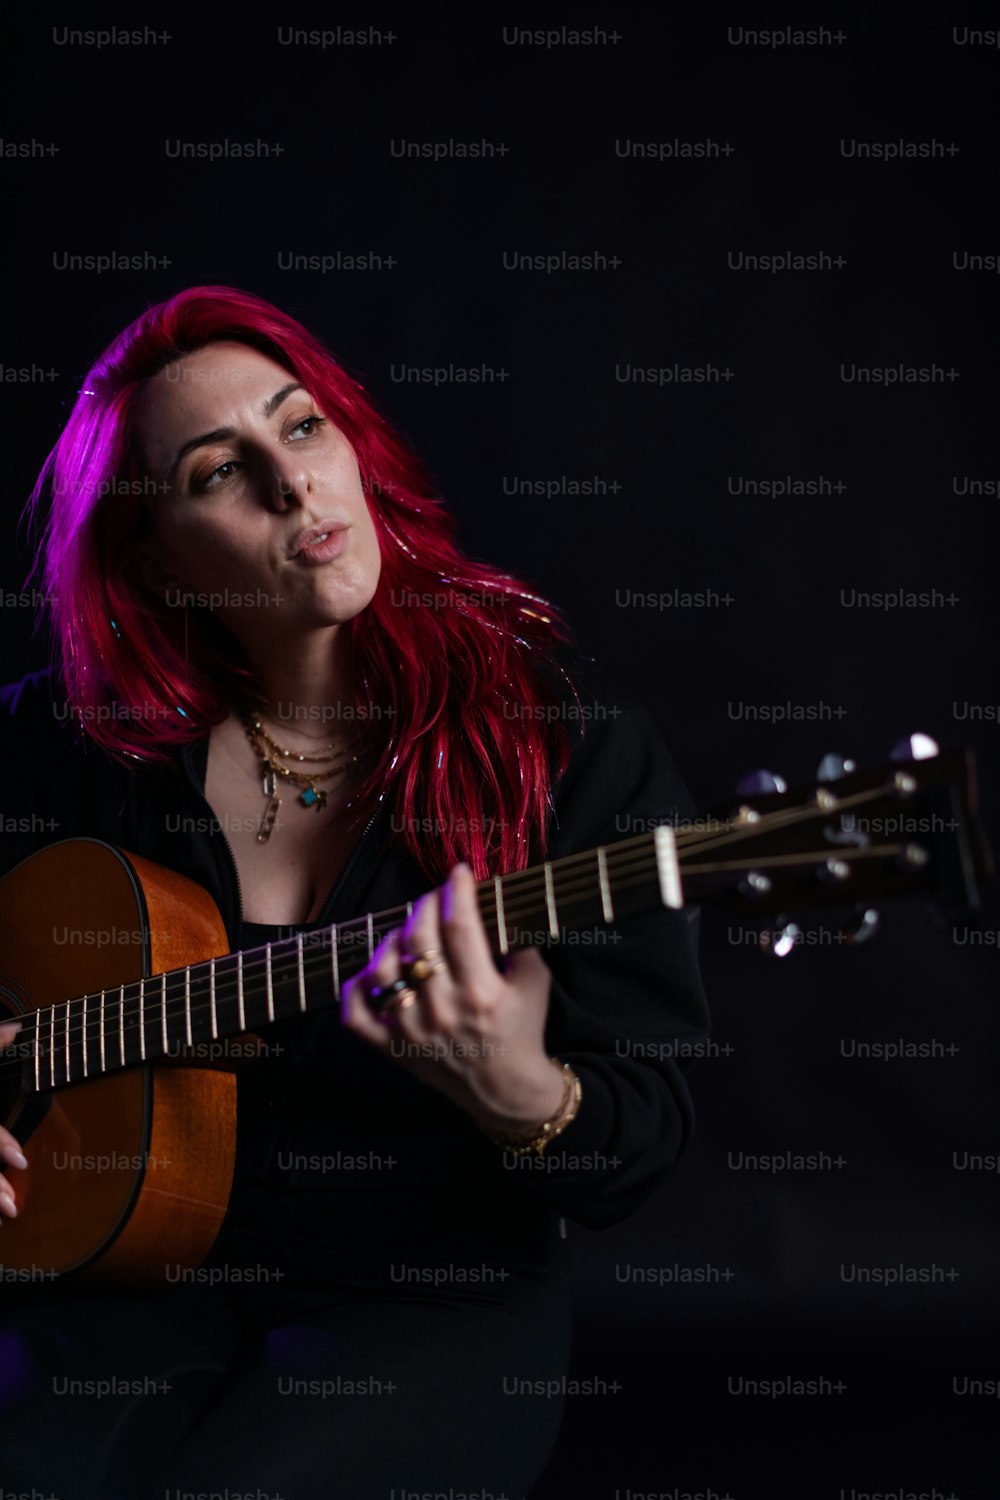 기타를 연주하는 빨간 머리를 가진 여자